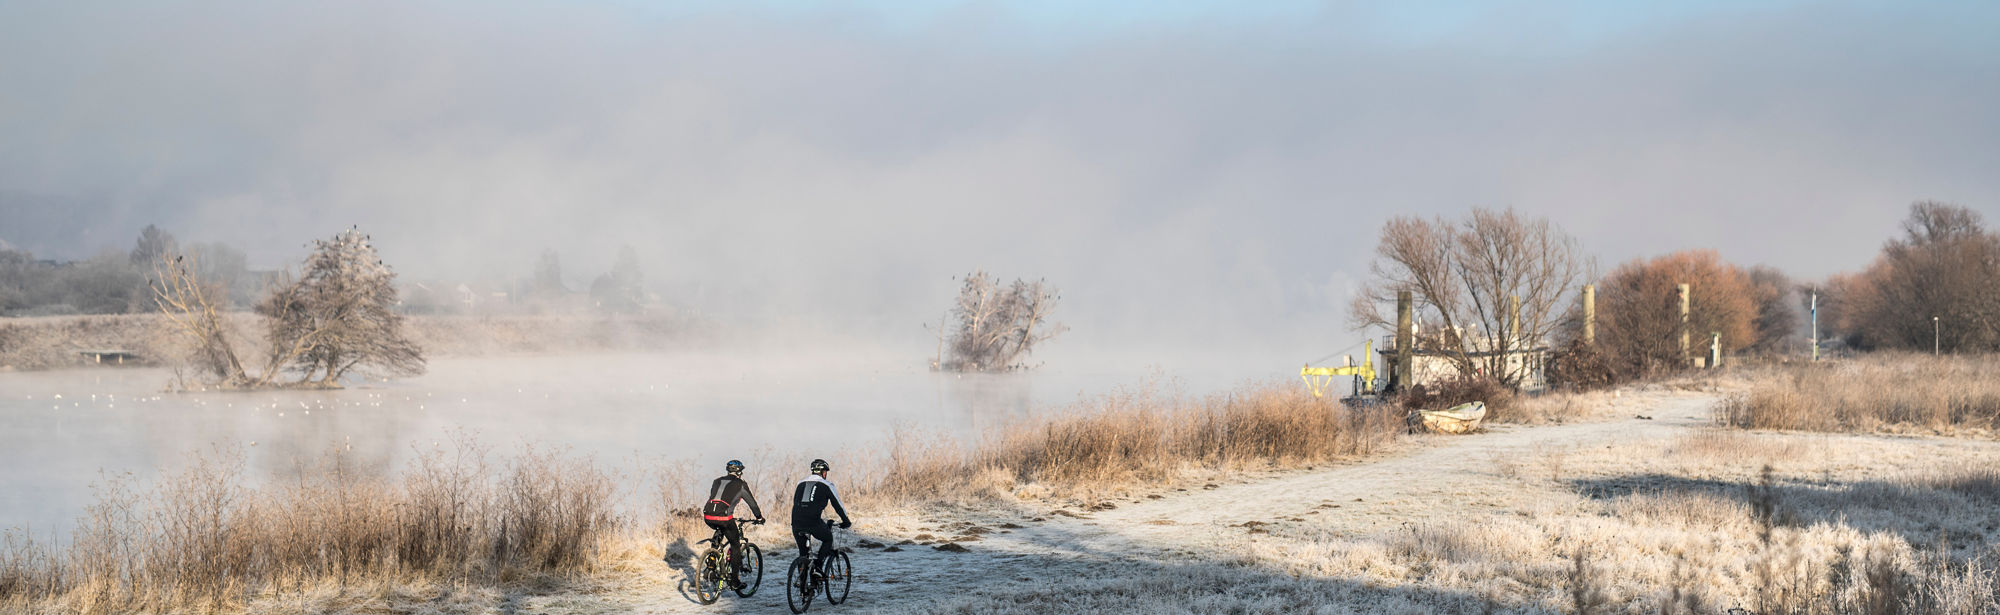 Mountainbiken in een winters landschap langs een mistige rivier